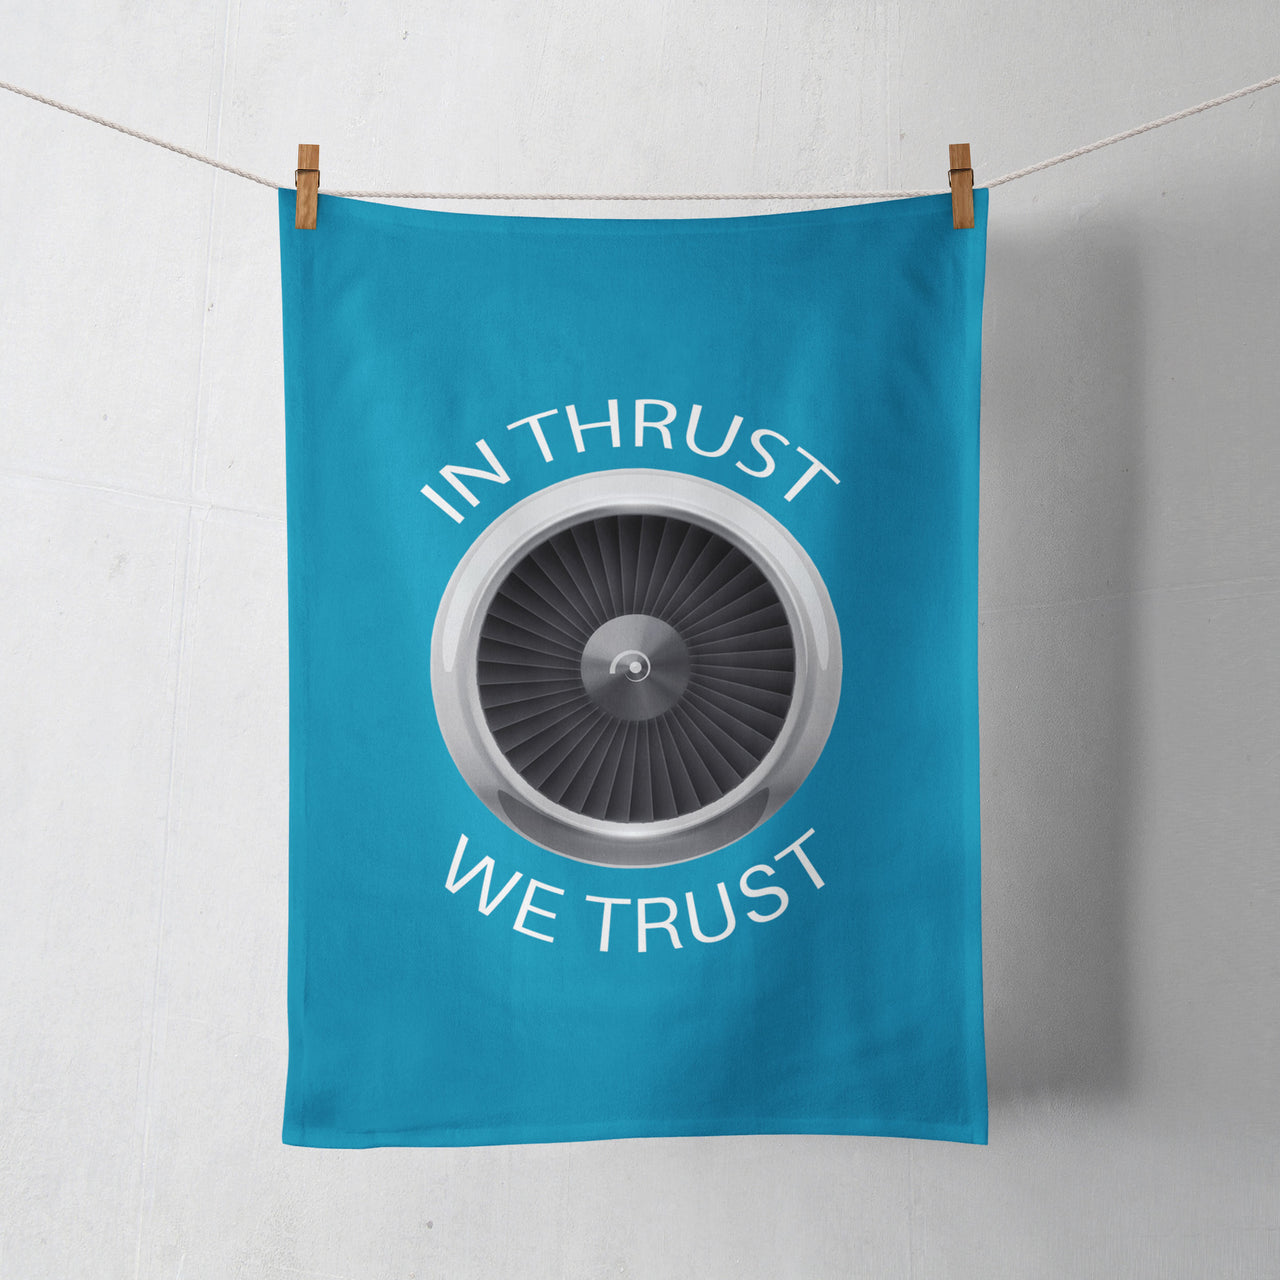 In Thrust We Trust Designed Towels